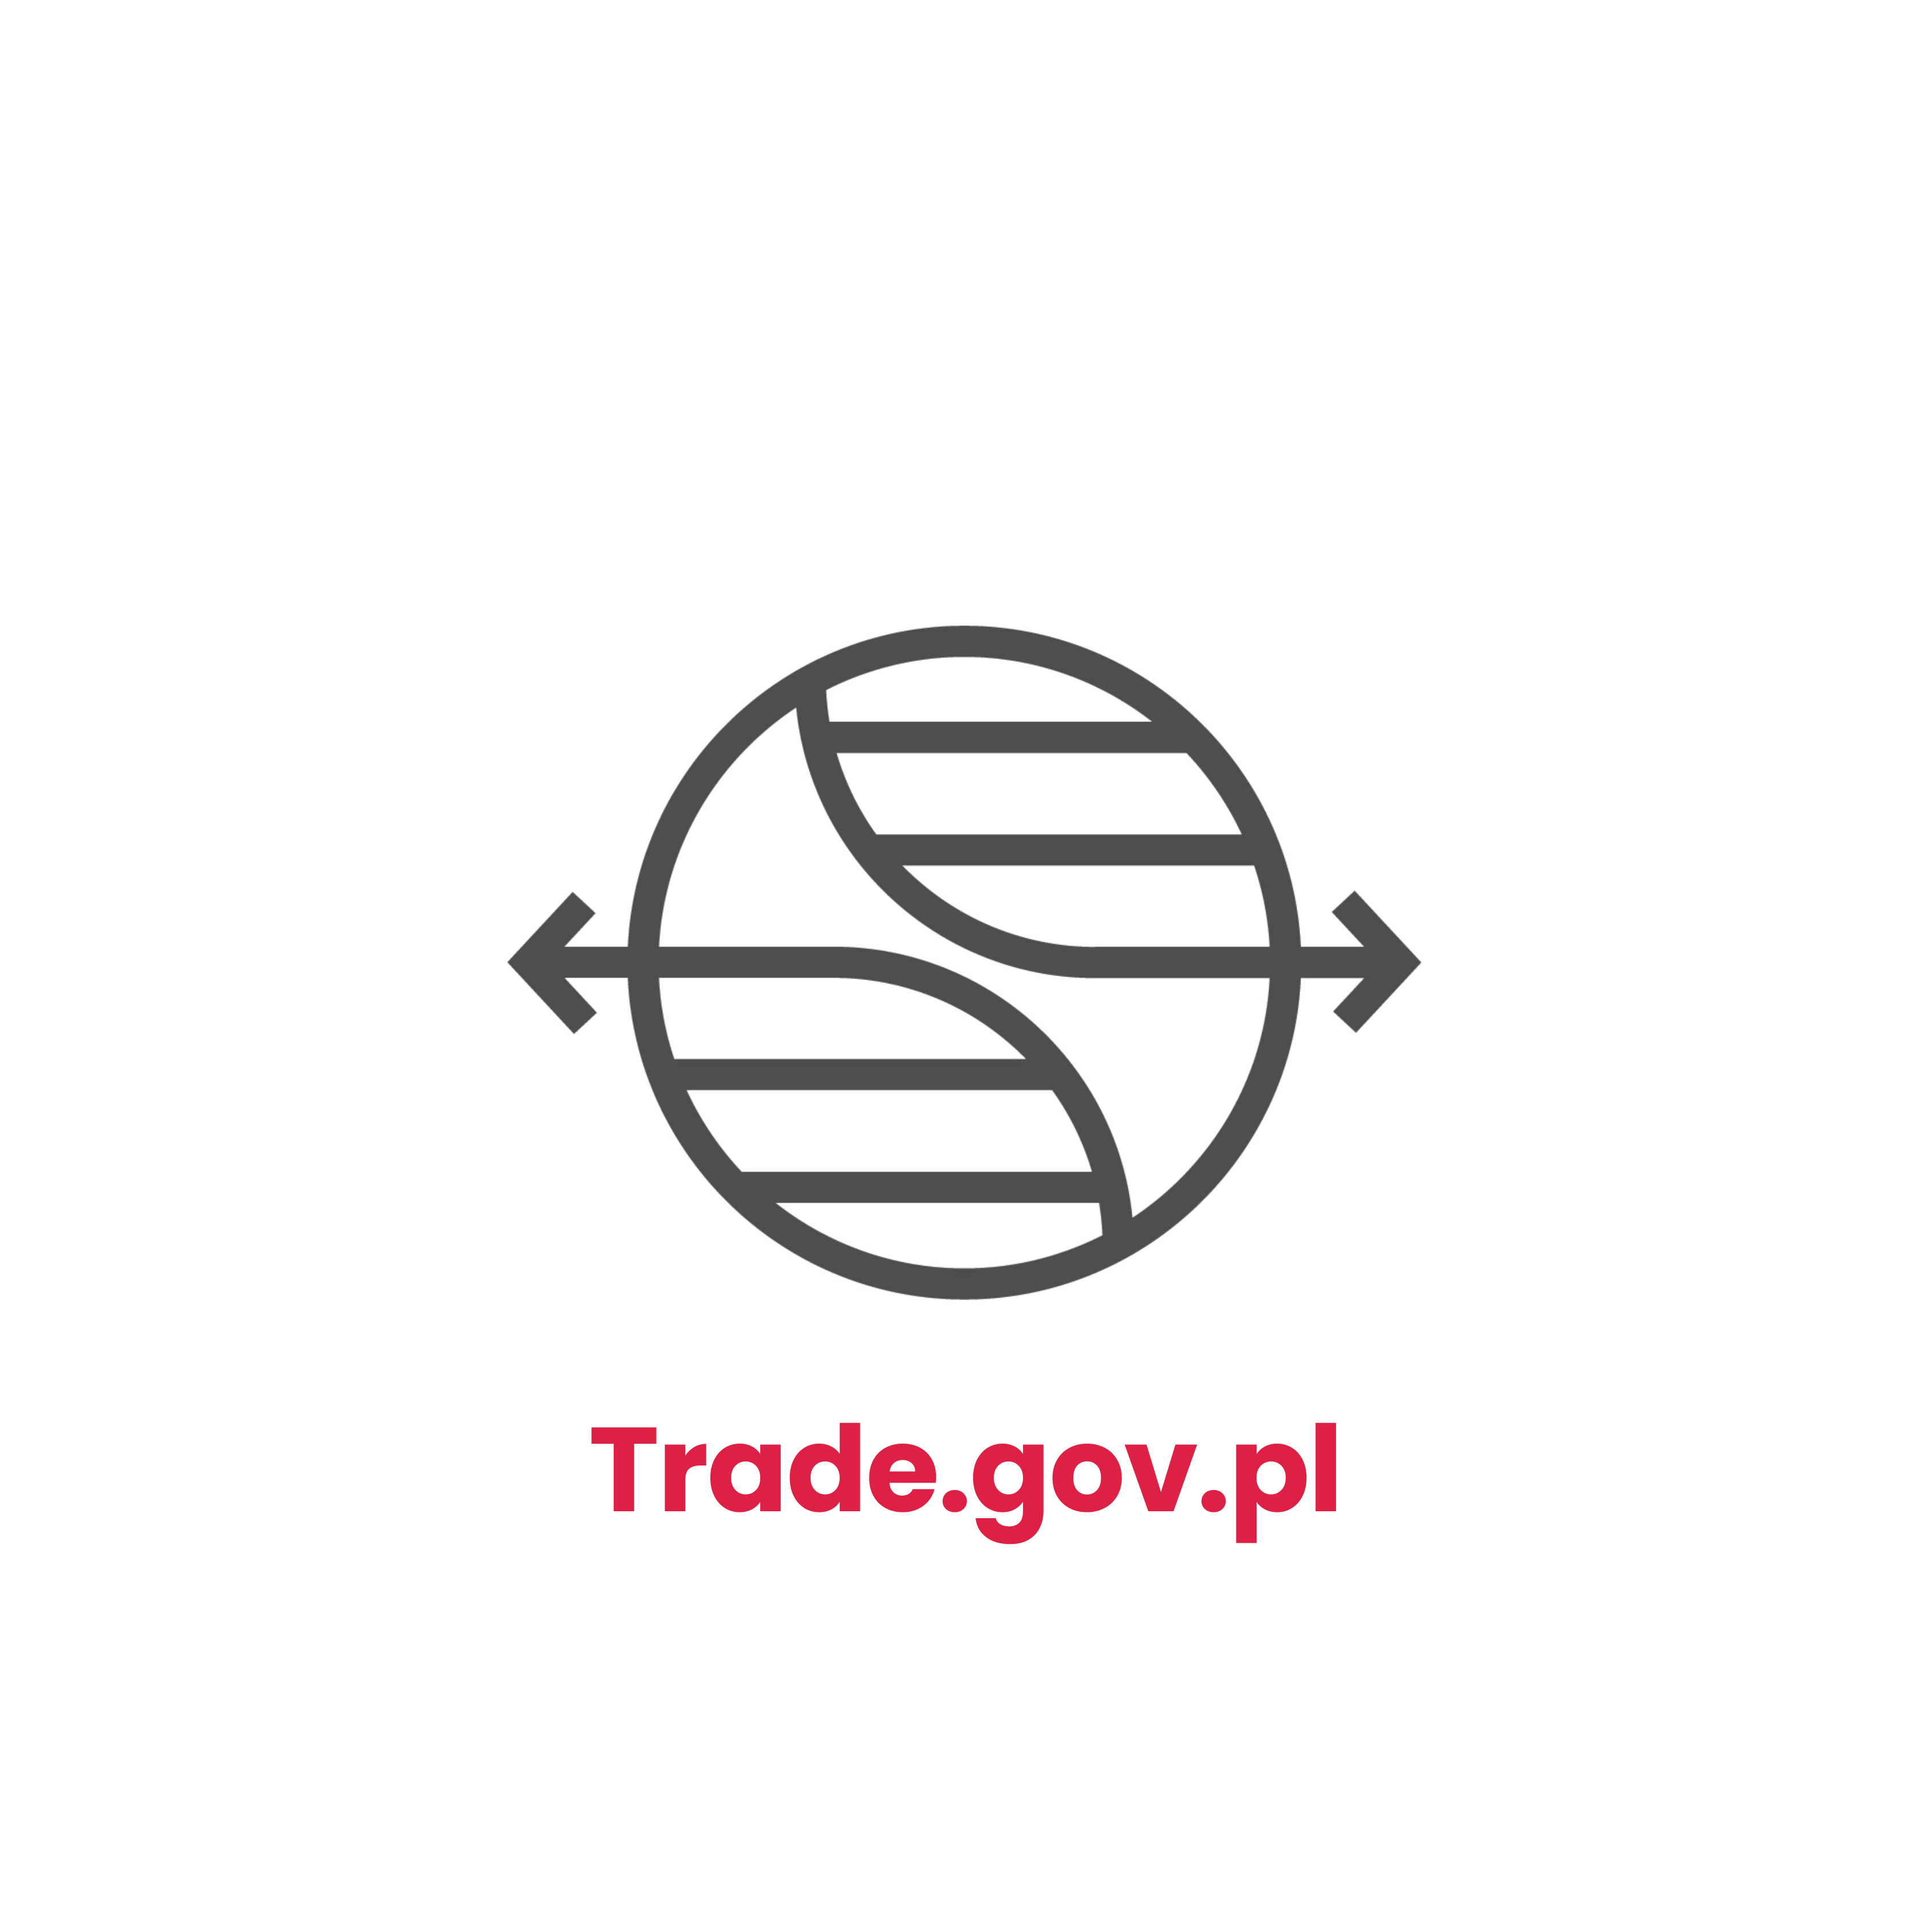 Tekst przedstawia logotyp trade.gove.pl, szary globus z dwiema strzałkami oraz różowy napis "trade.gov.pl" pod nim.